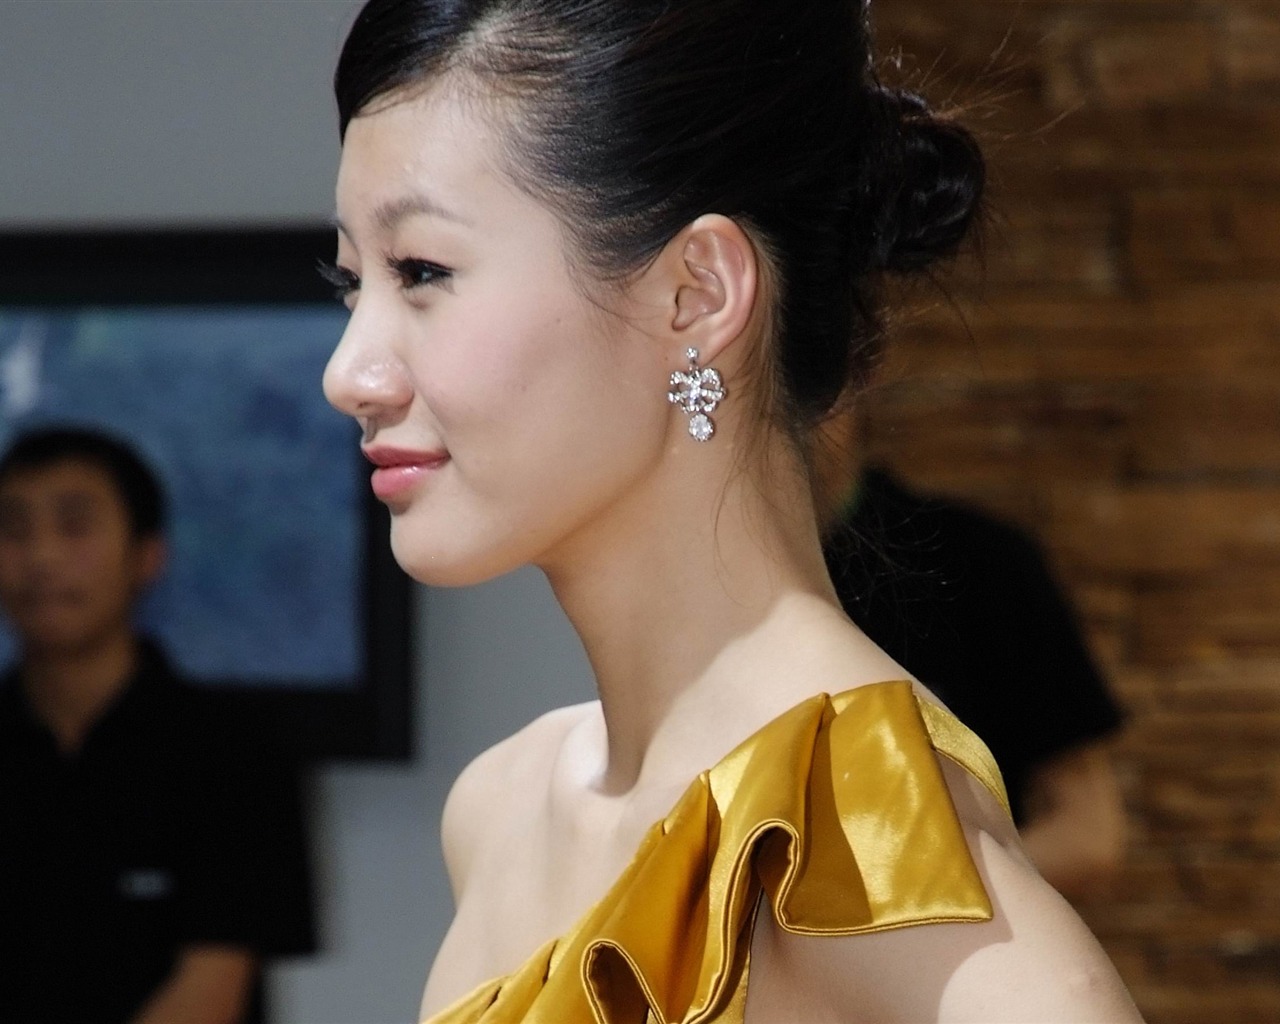 2010北京国际车展 美女车模 (螺纹钢作品)13 - 1280x1024